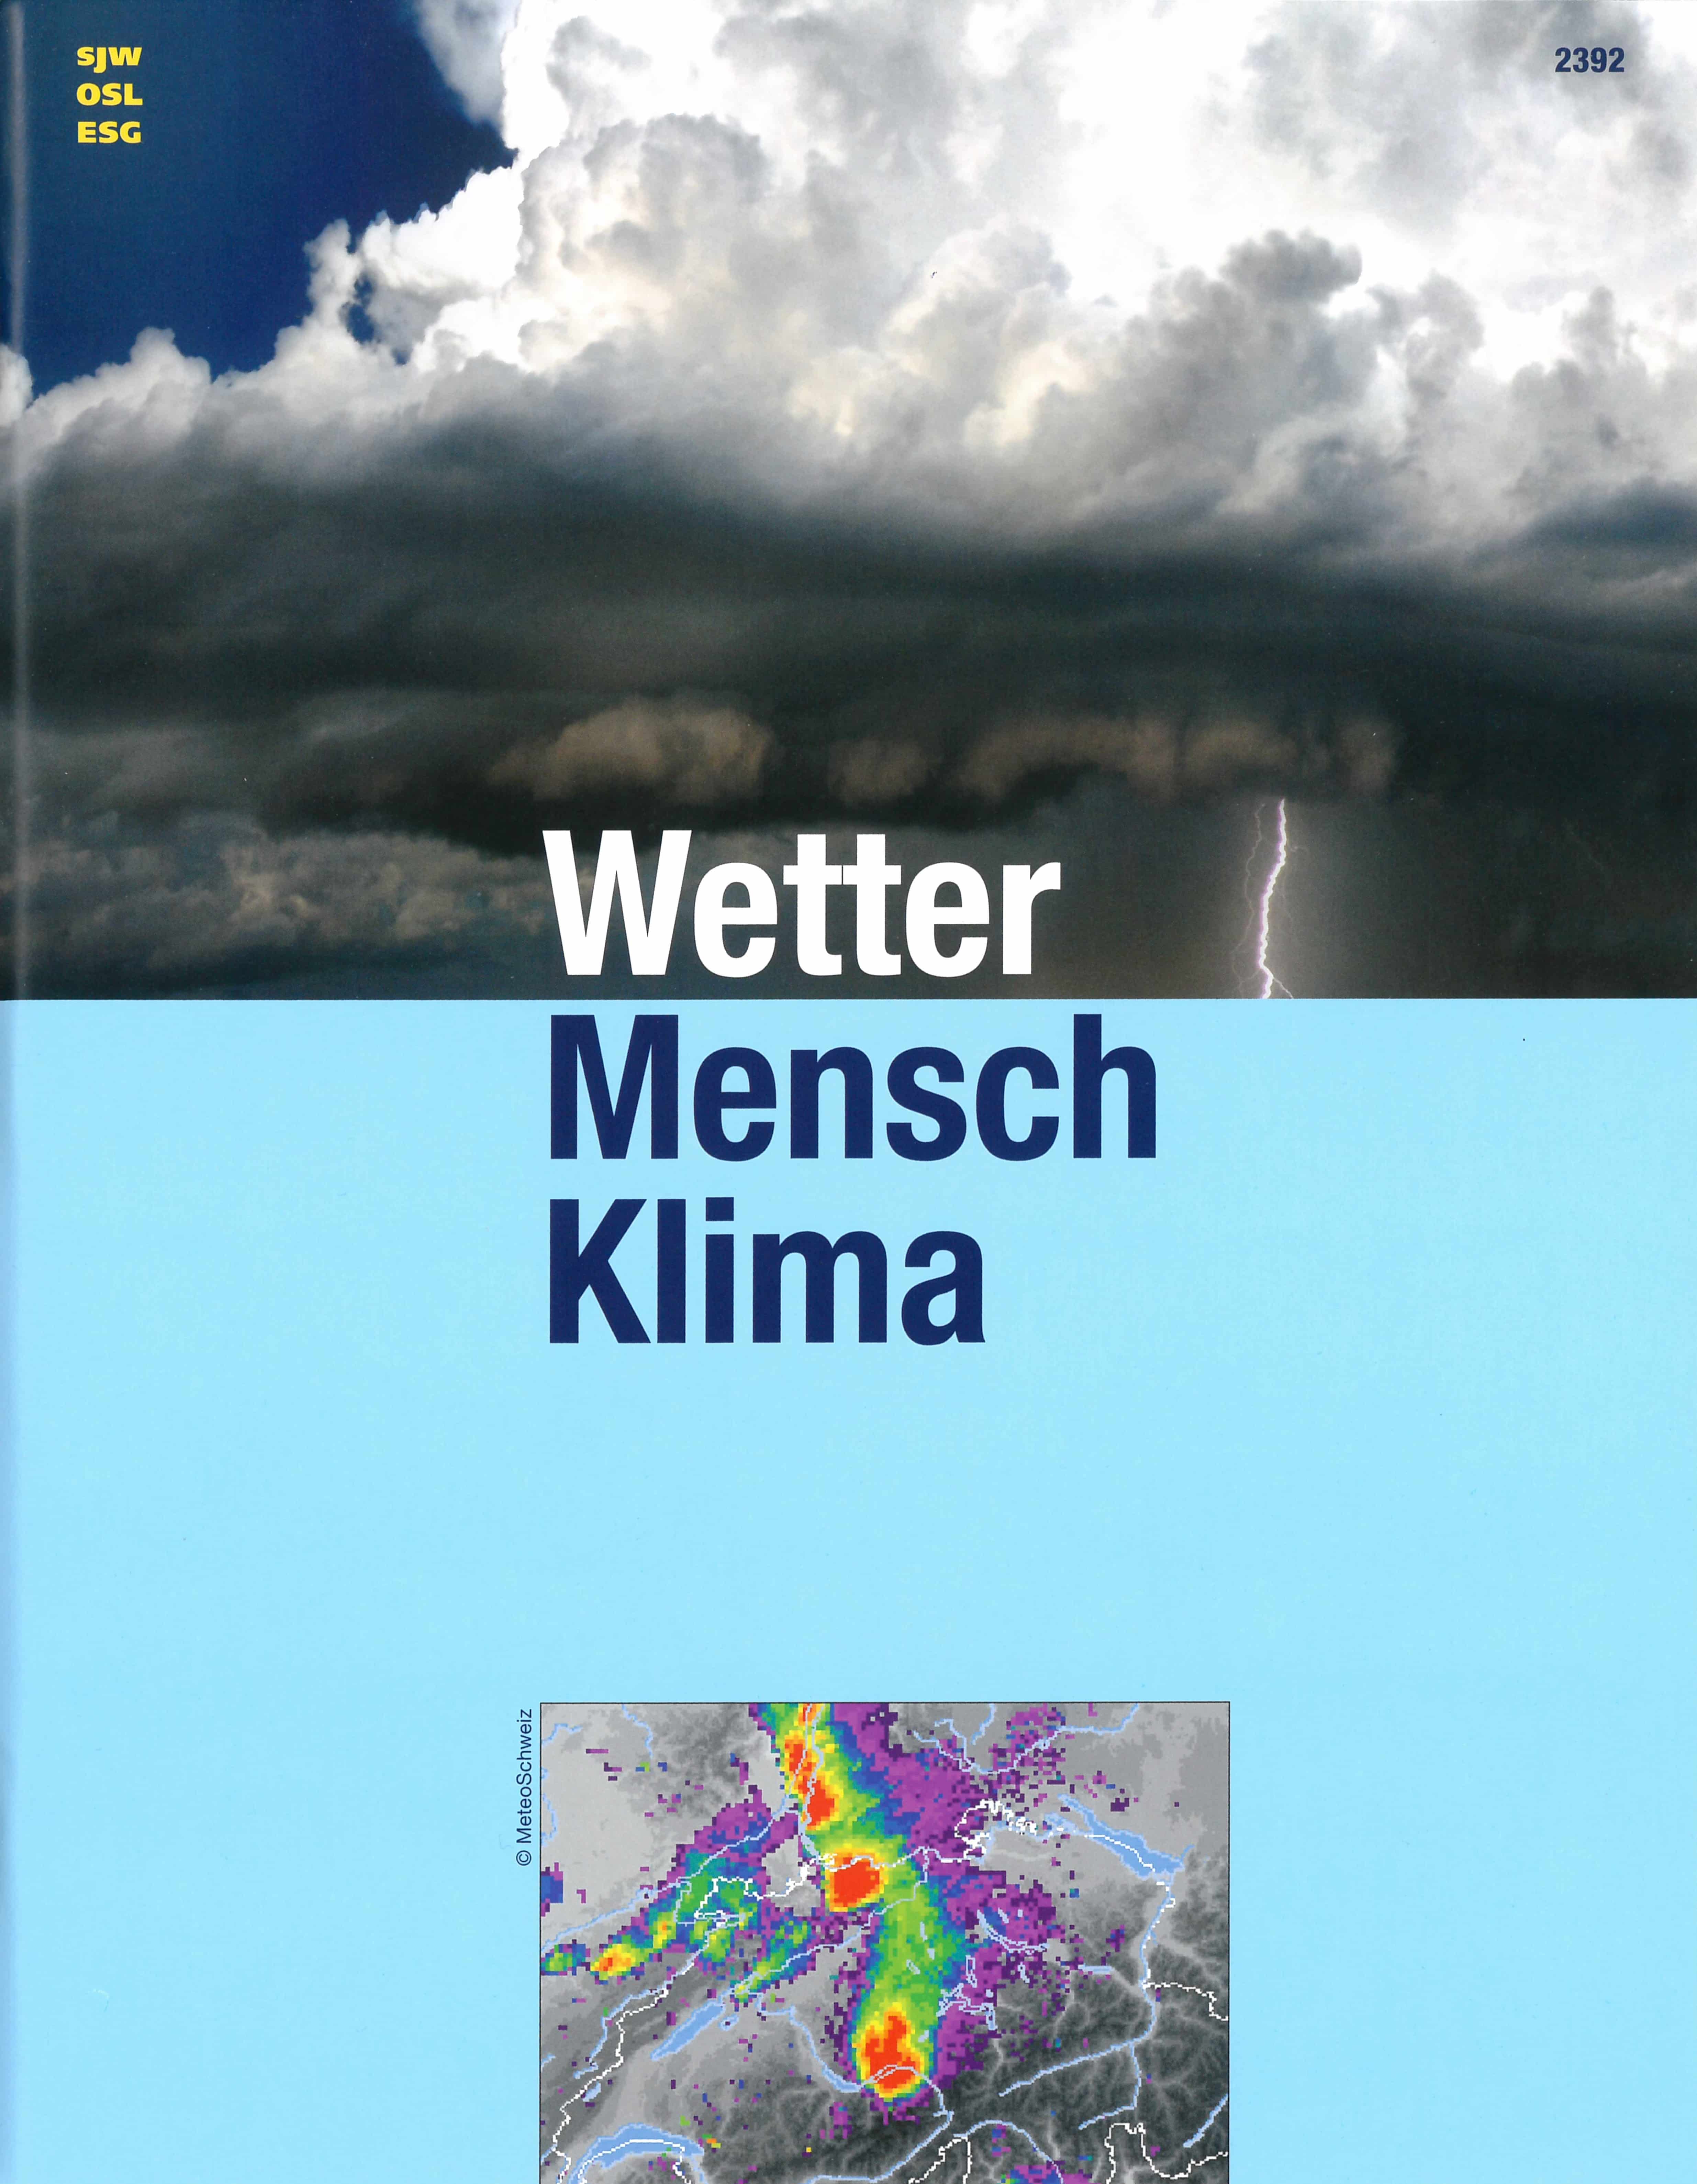 Wetter Mensch Klima, ein Sachbuch von Margrit Rosa Schmid, Illustration von Anna Luchs, SJW Verlag, Natur, Sachtitel